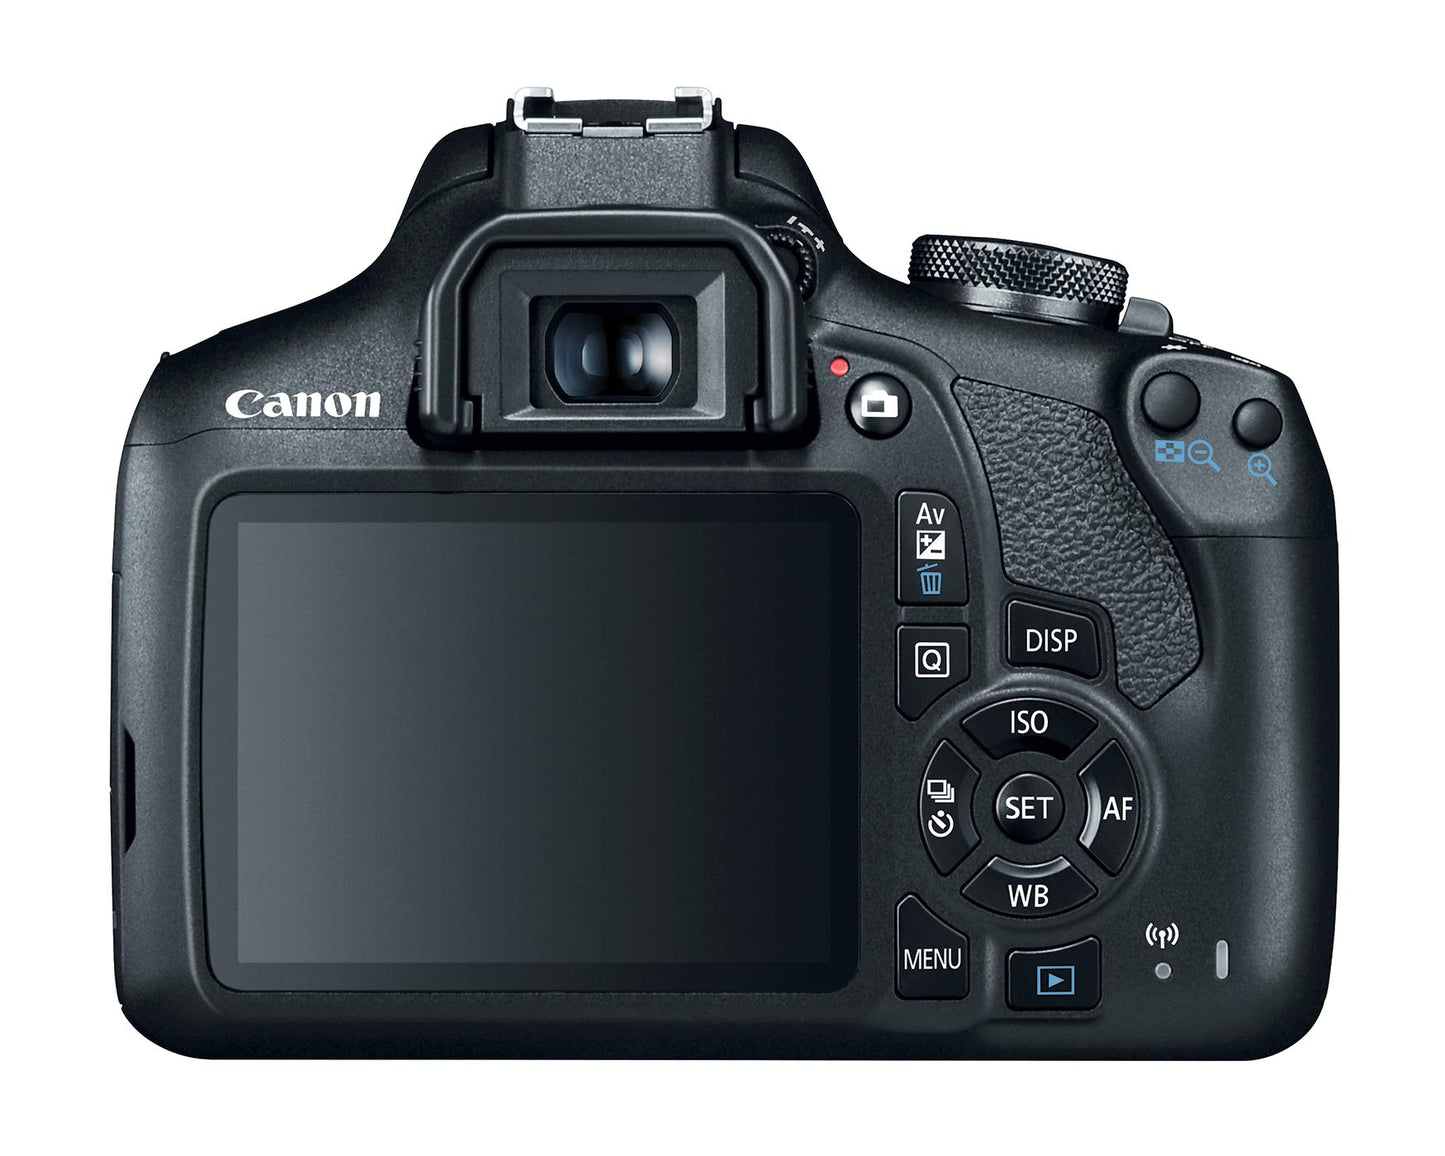 Canon EOS 1500D Camera